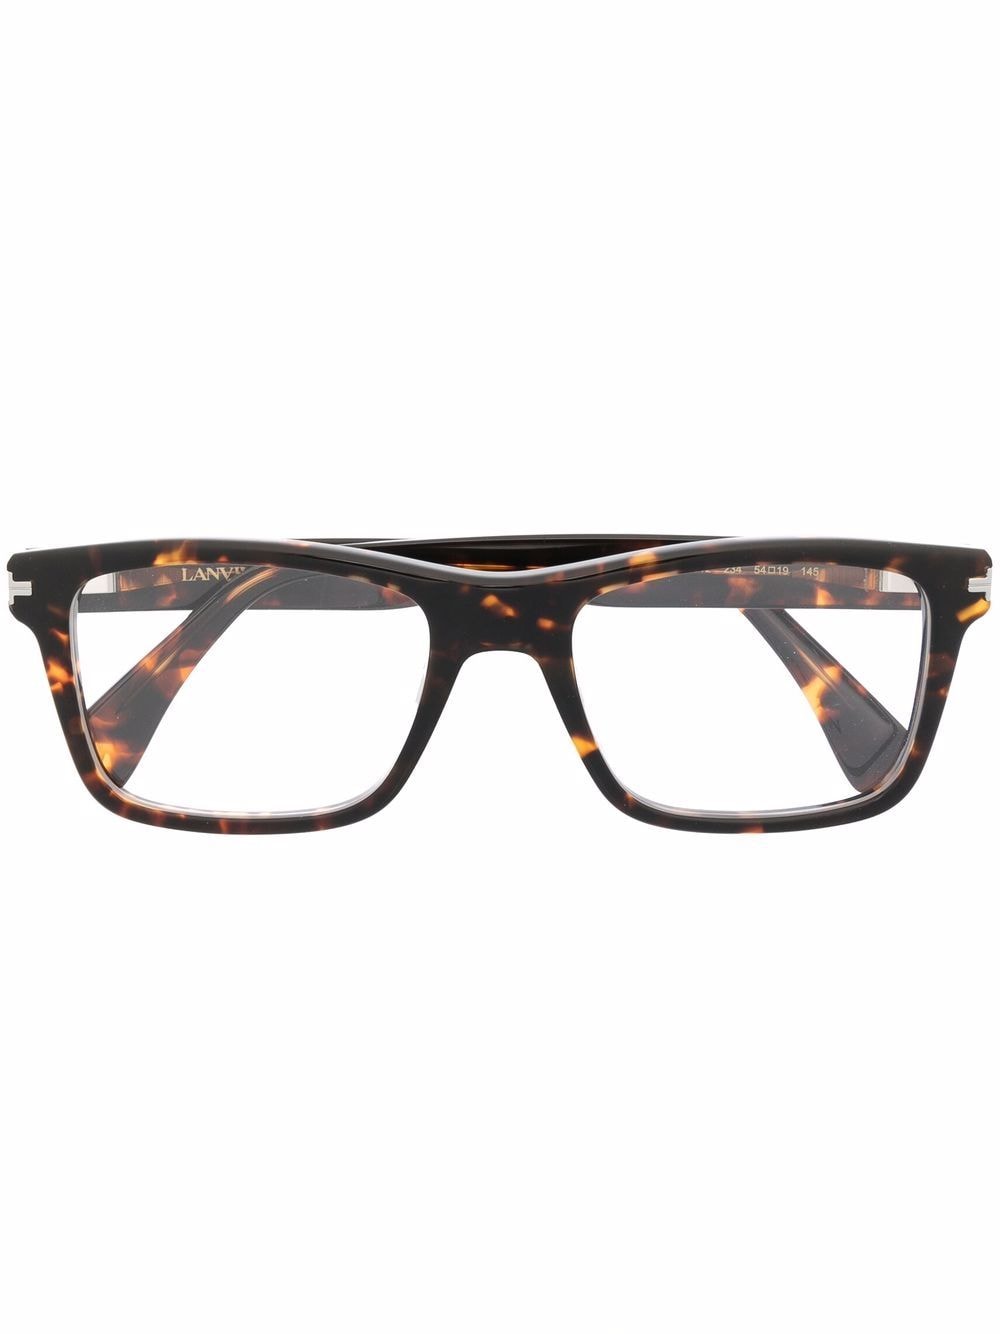 фото Lanvin очки в квадратной оправе черепаховой расцветки